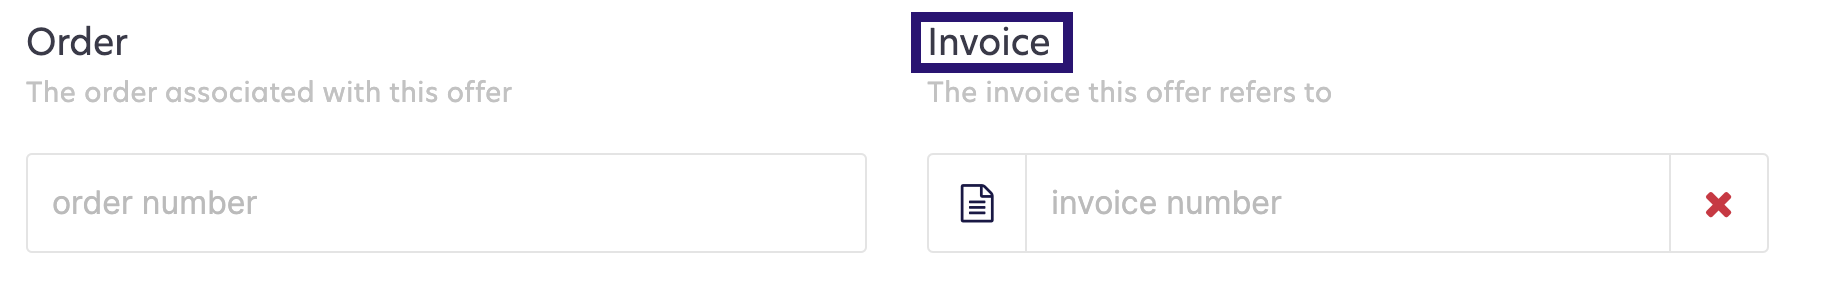 offer_order_invoice_number.png